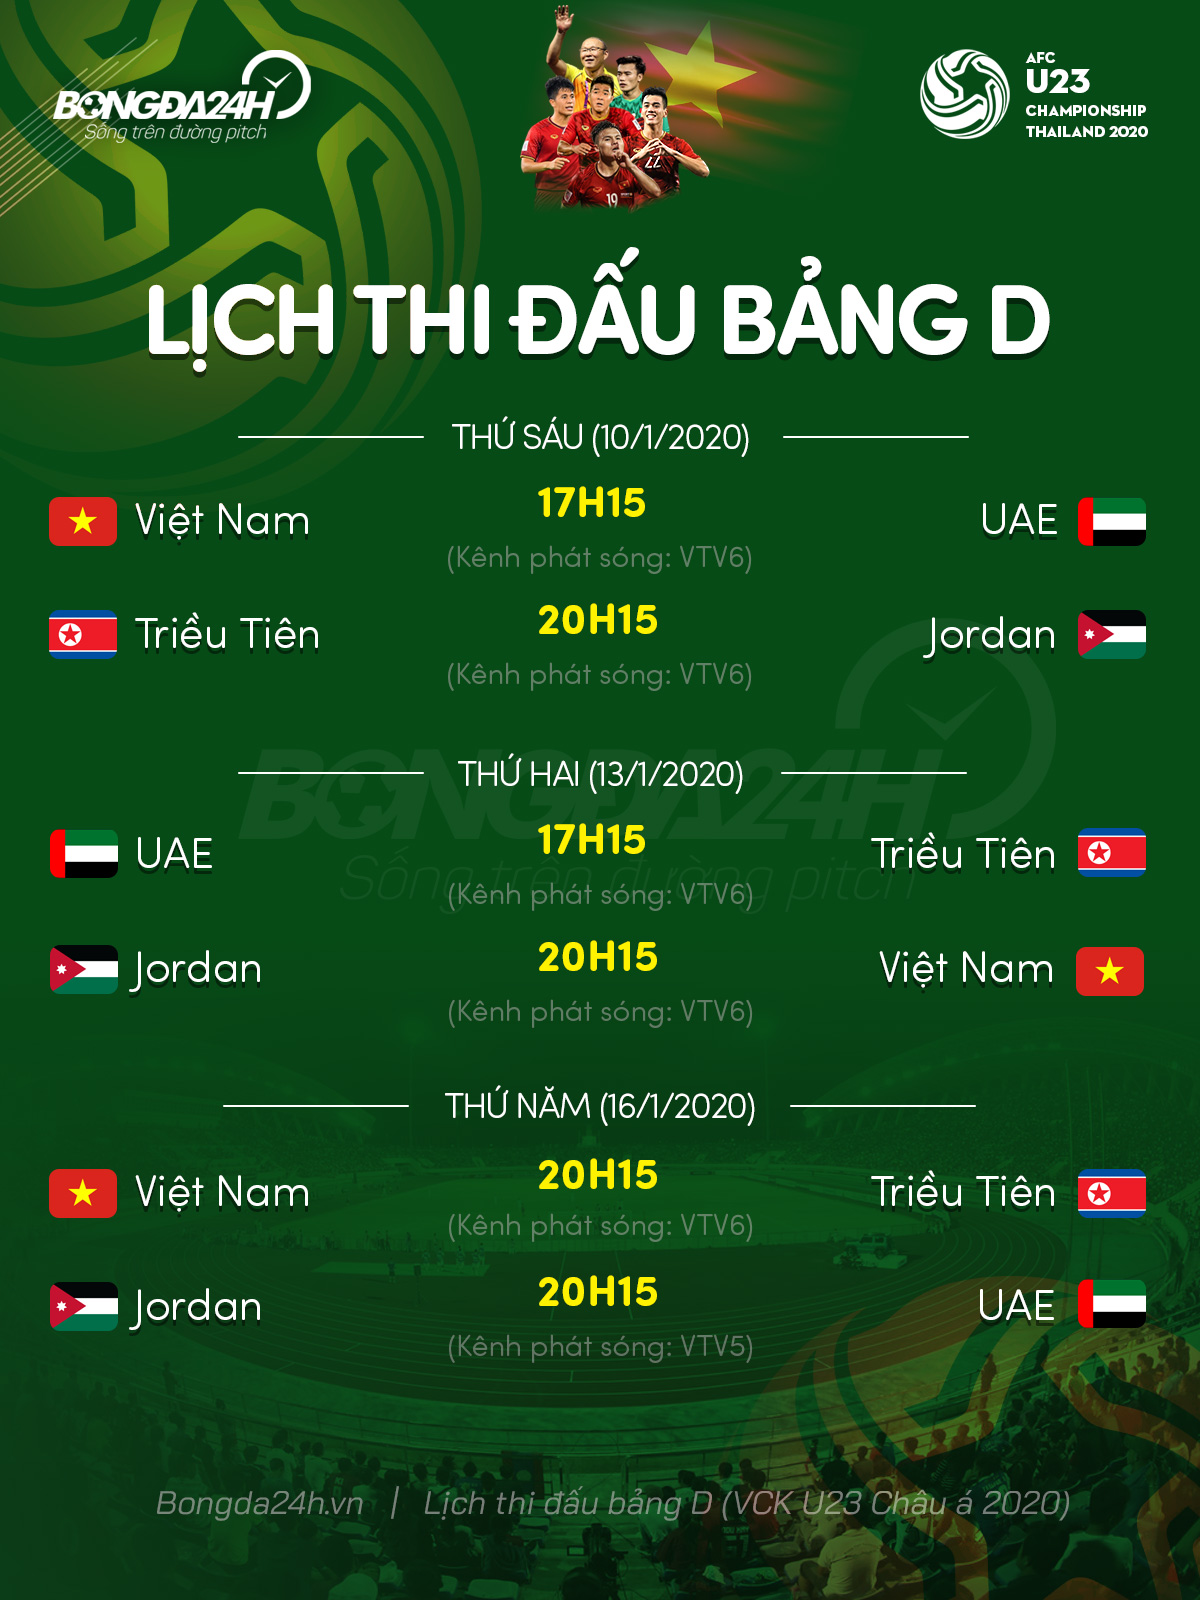 Báo châu Á không tin U23 Việt Nam tạo nên phép màu  hình ảnh